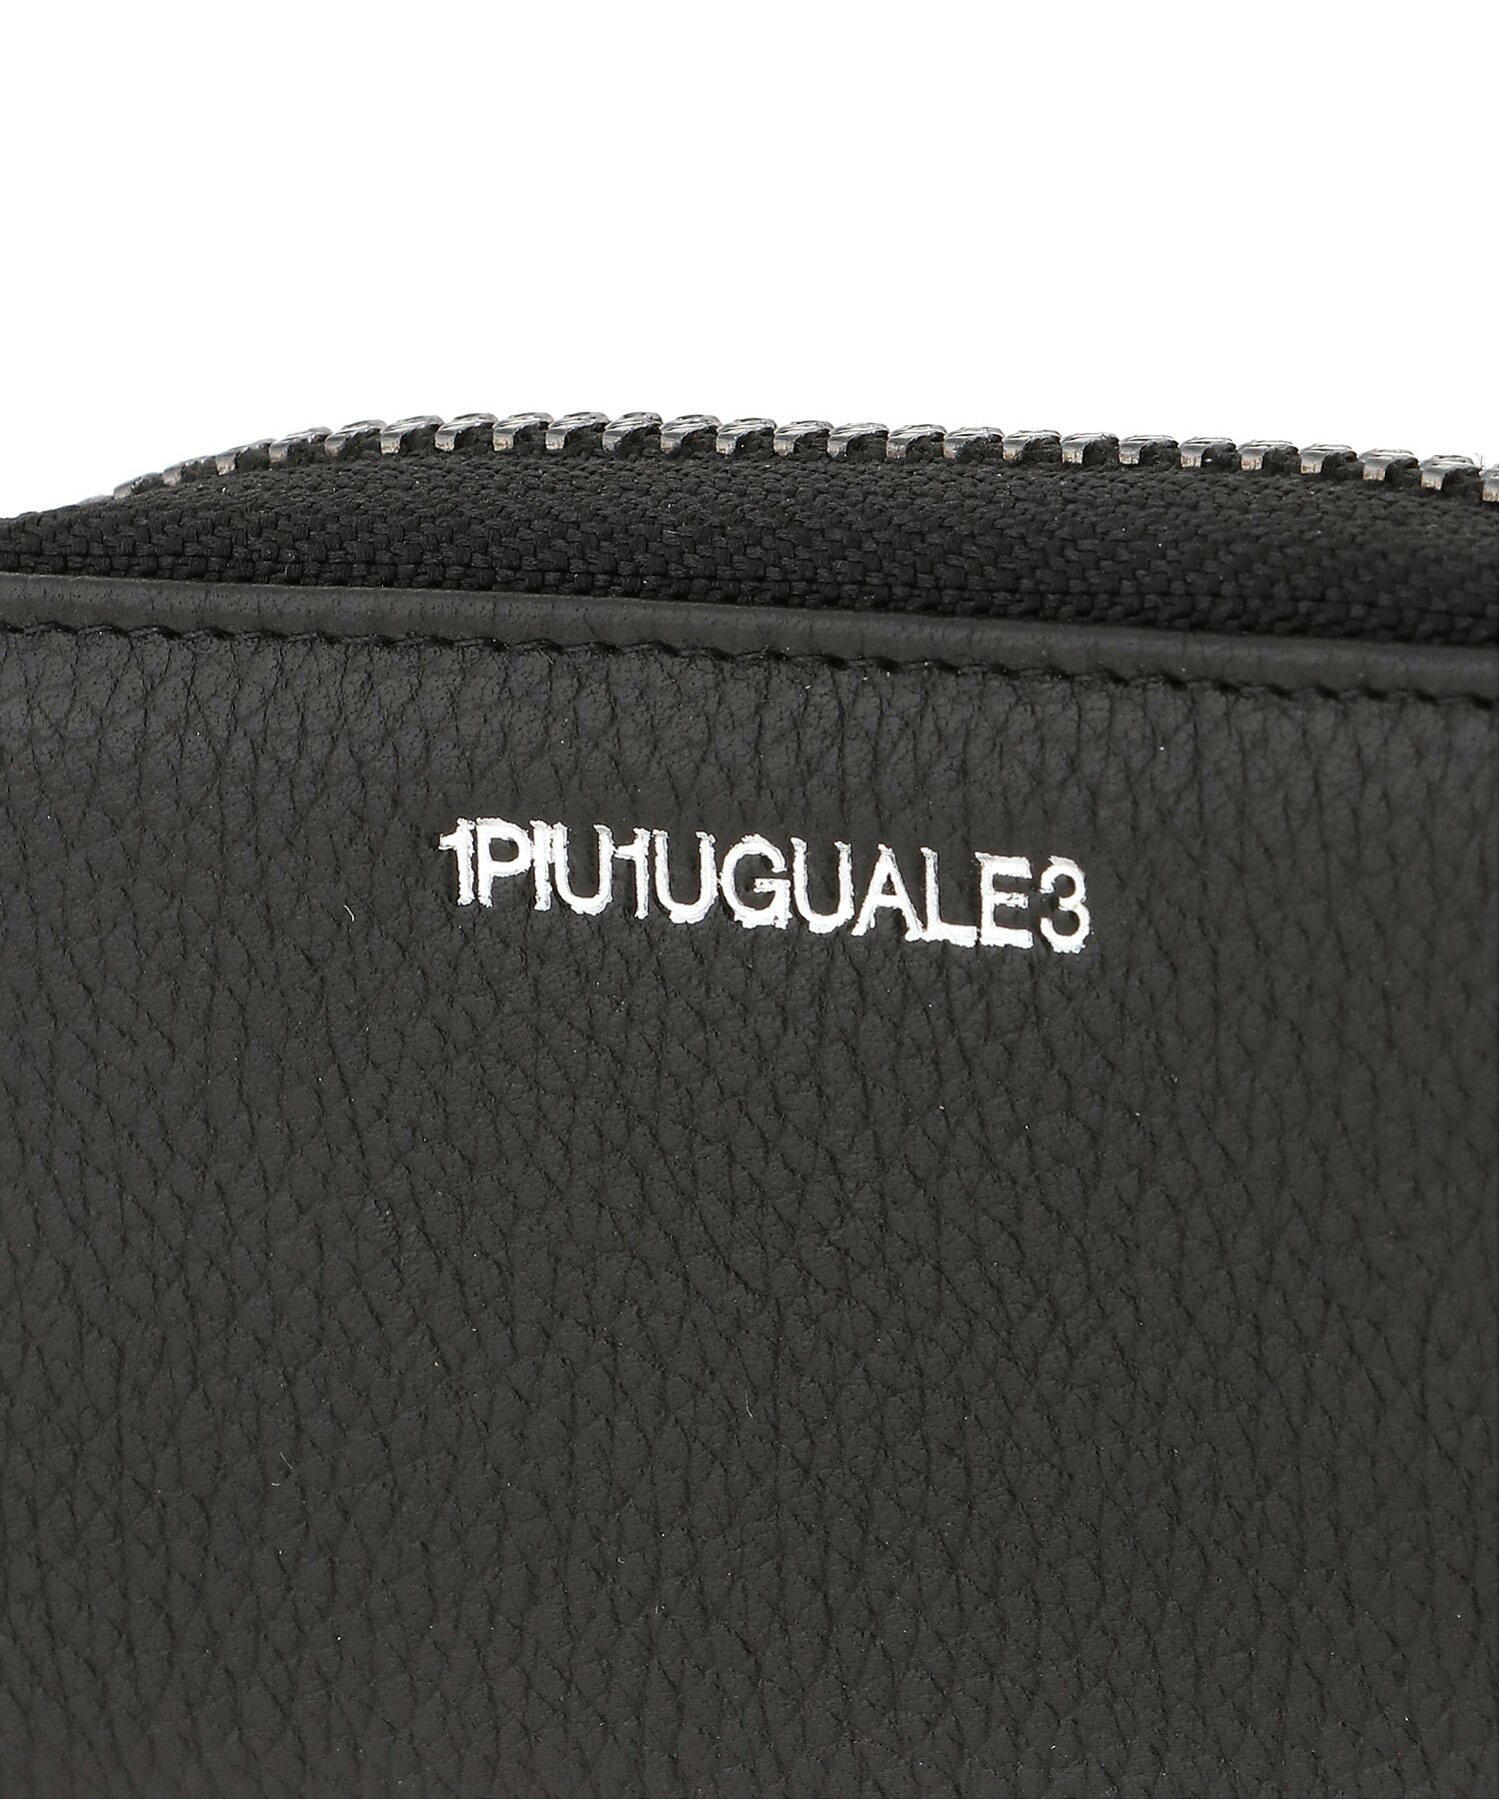 1PIU1UGUALE3 RELAX/1PIU1UGUALE3 RELAX(ウノピゥウノウグァーレトレ リラックス)カウレザーミニウォレット 財布